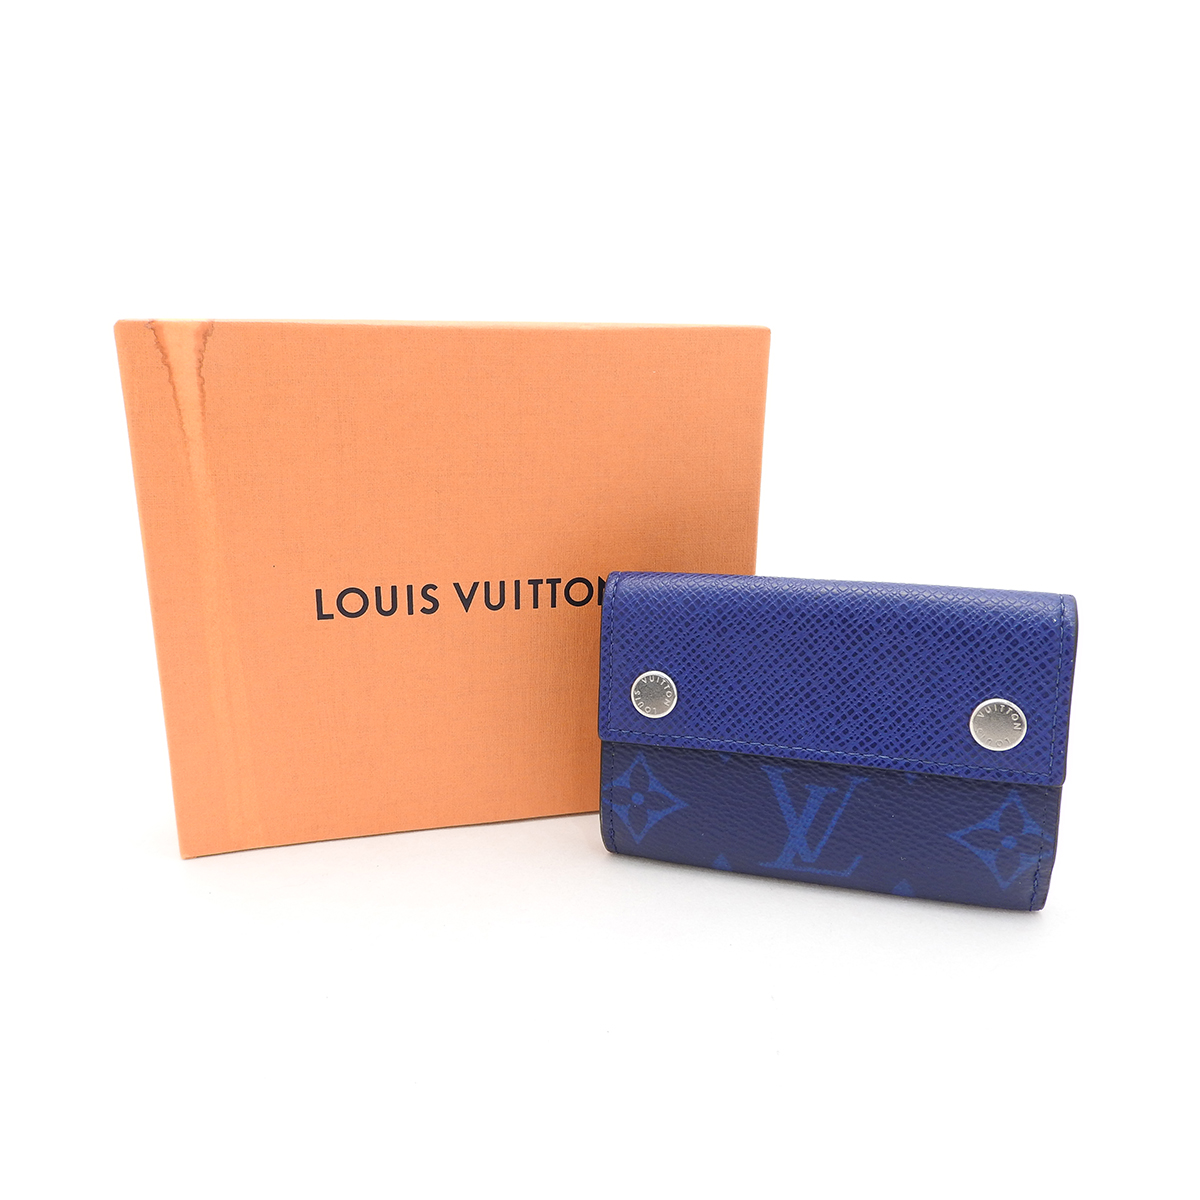 ルイヴィトン(Louis Vuitton) ディスカバリー・コンパクト ウォレット M67620 ブルー